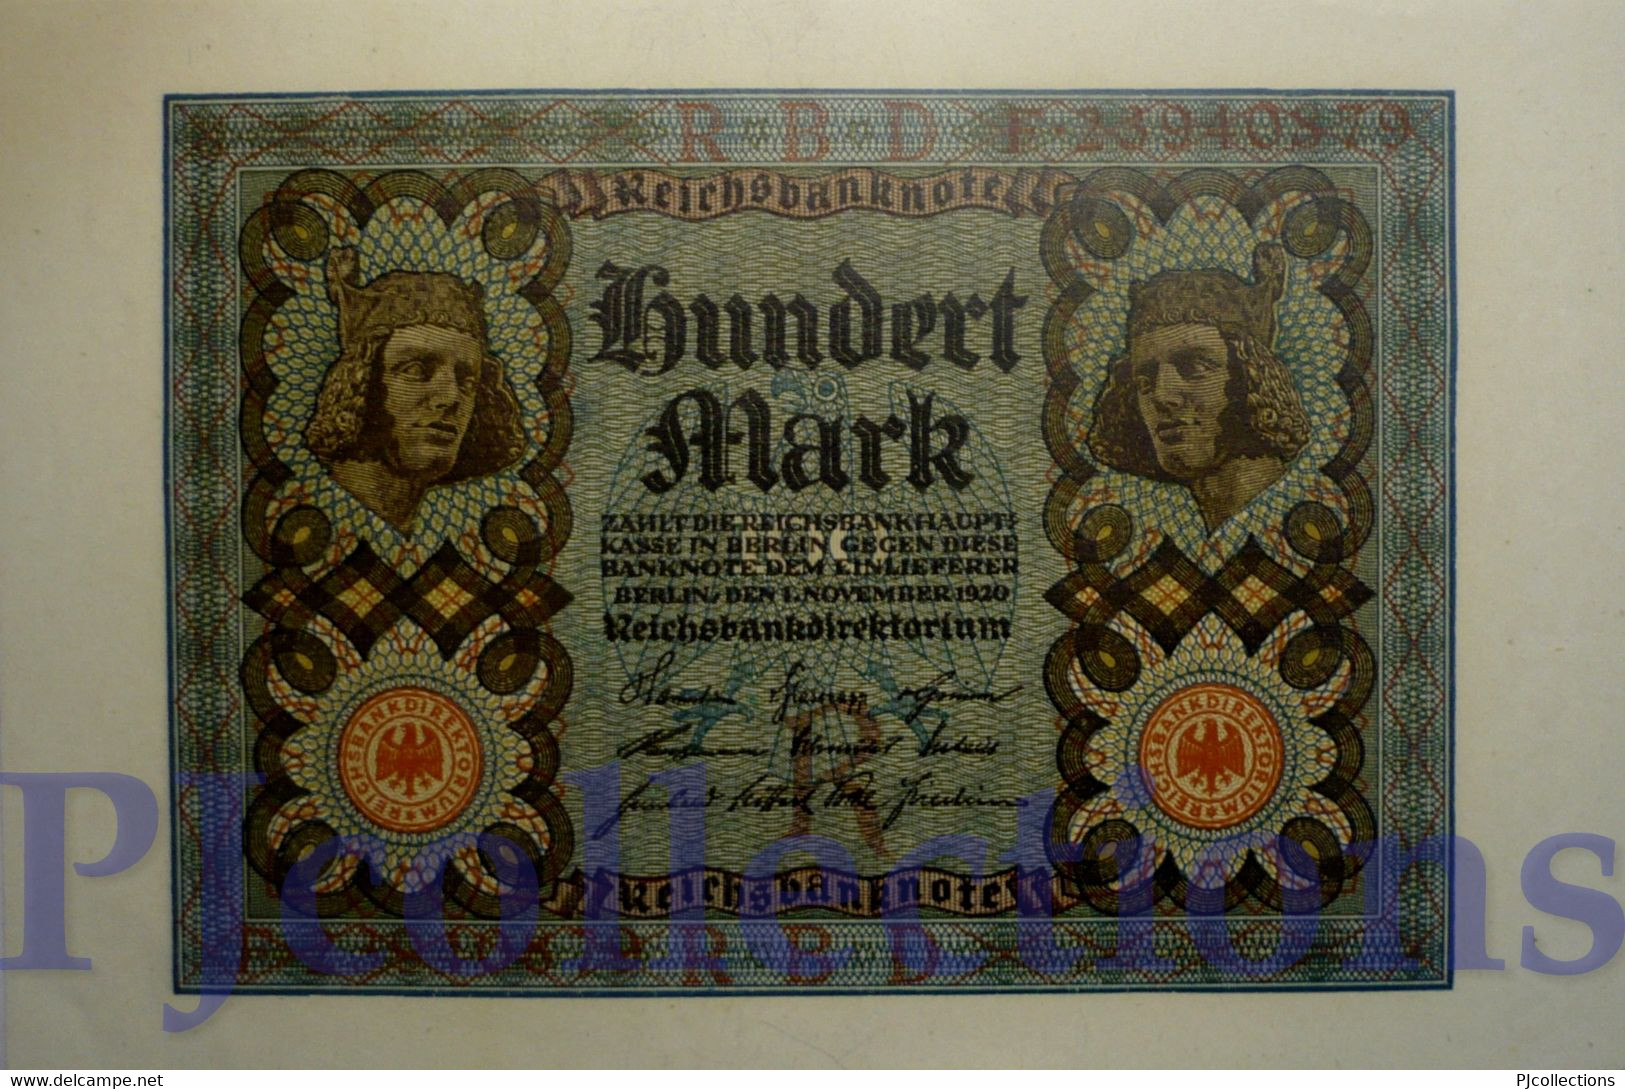 GERMANY 100 MARK 1920 PICK 69b AUNC - Administration De La Dette